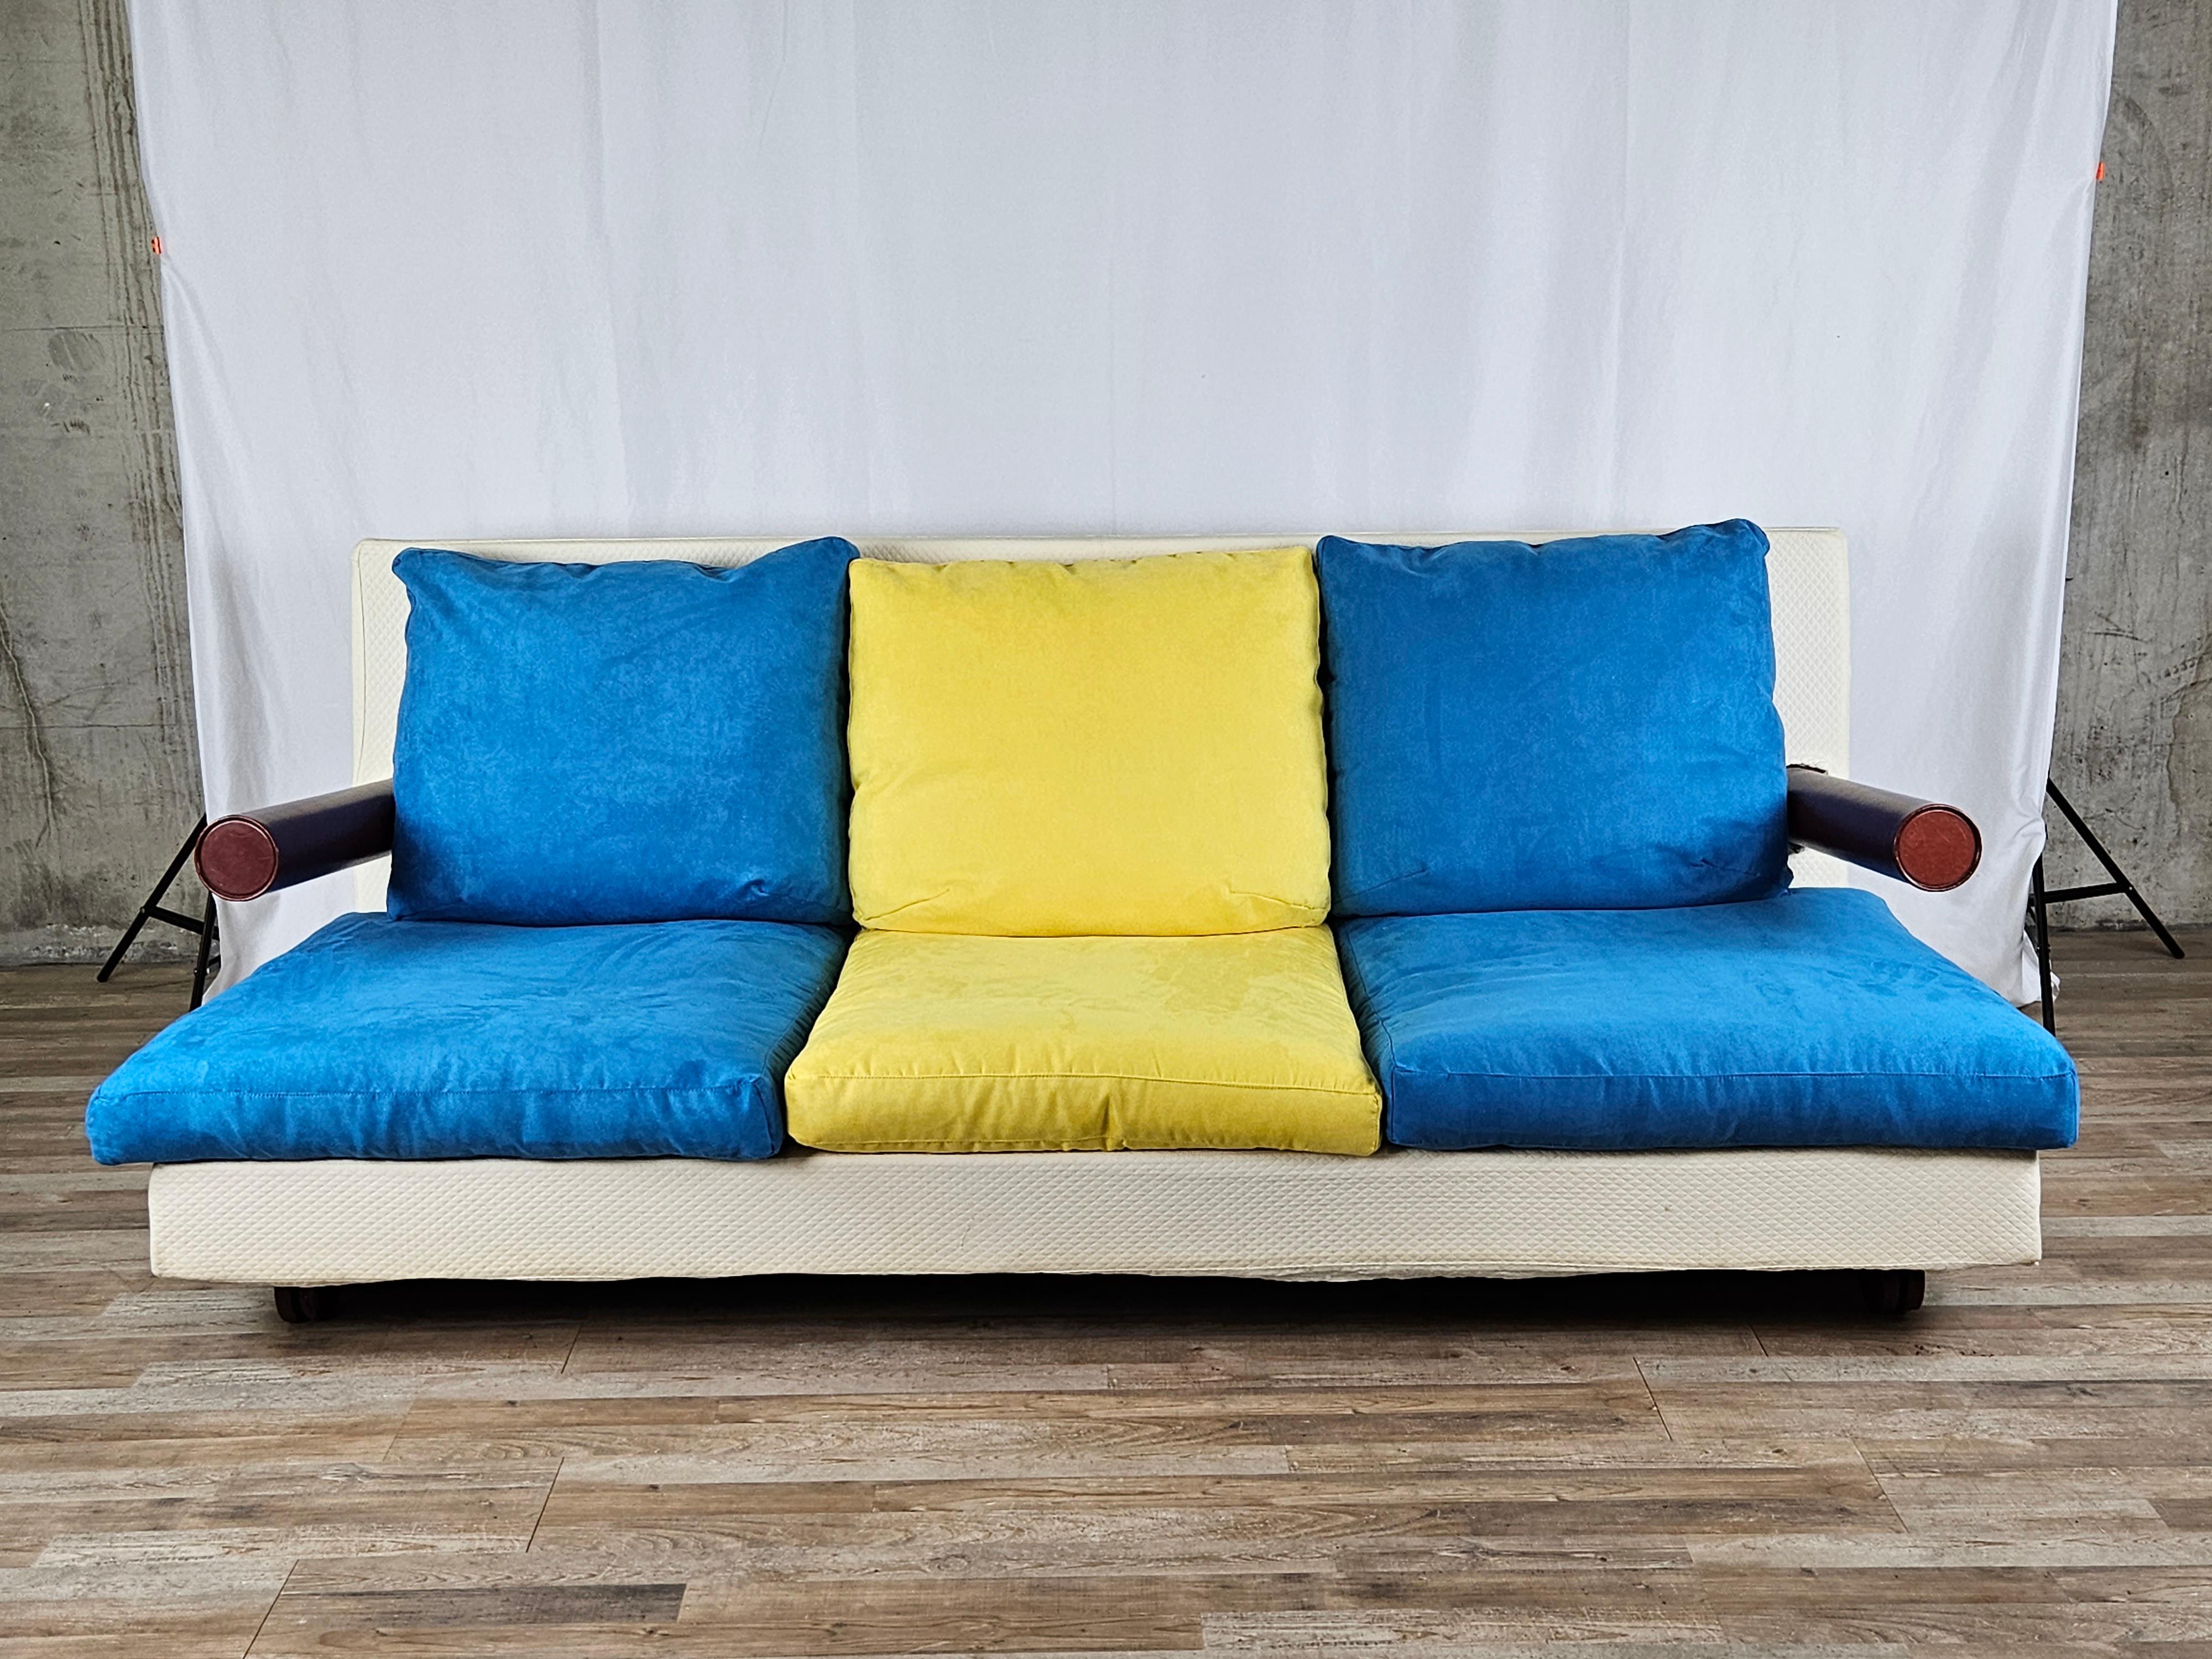 Italienisches Design-Sofa, hergestellt von B&B Italia nach einem Entwurf von Antonio Citterio, um 1986.

Ein modernes und attraktives Möbelstück, das sich in jede Art von Umgebung einfügt, von modern bis antik.

Die cremefarbene Polsterung des